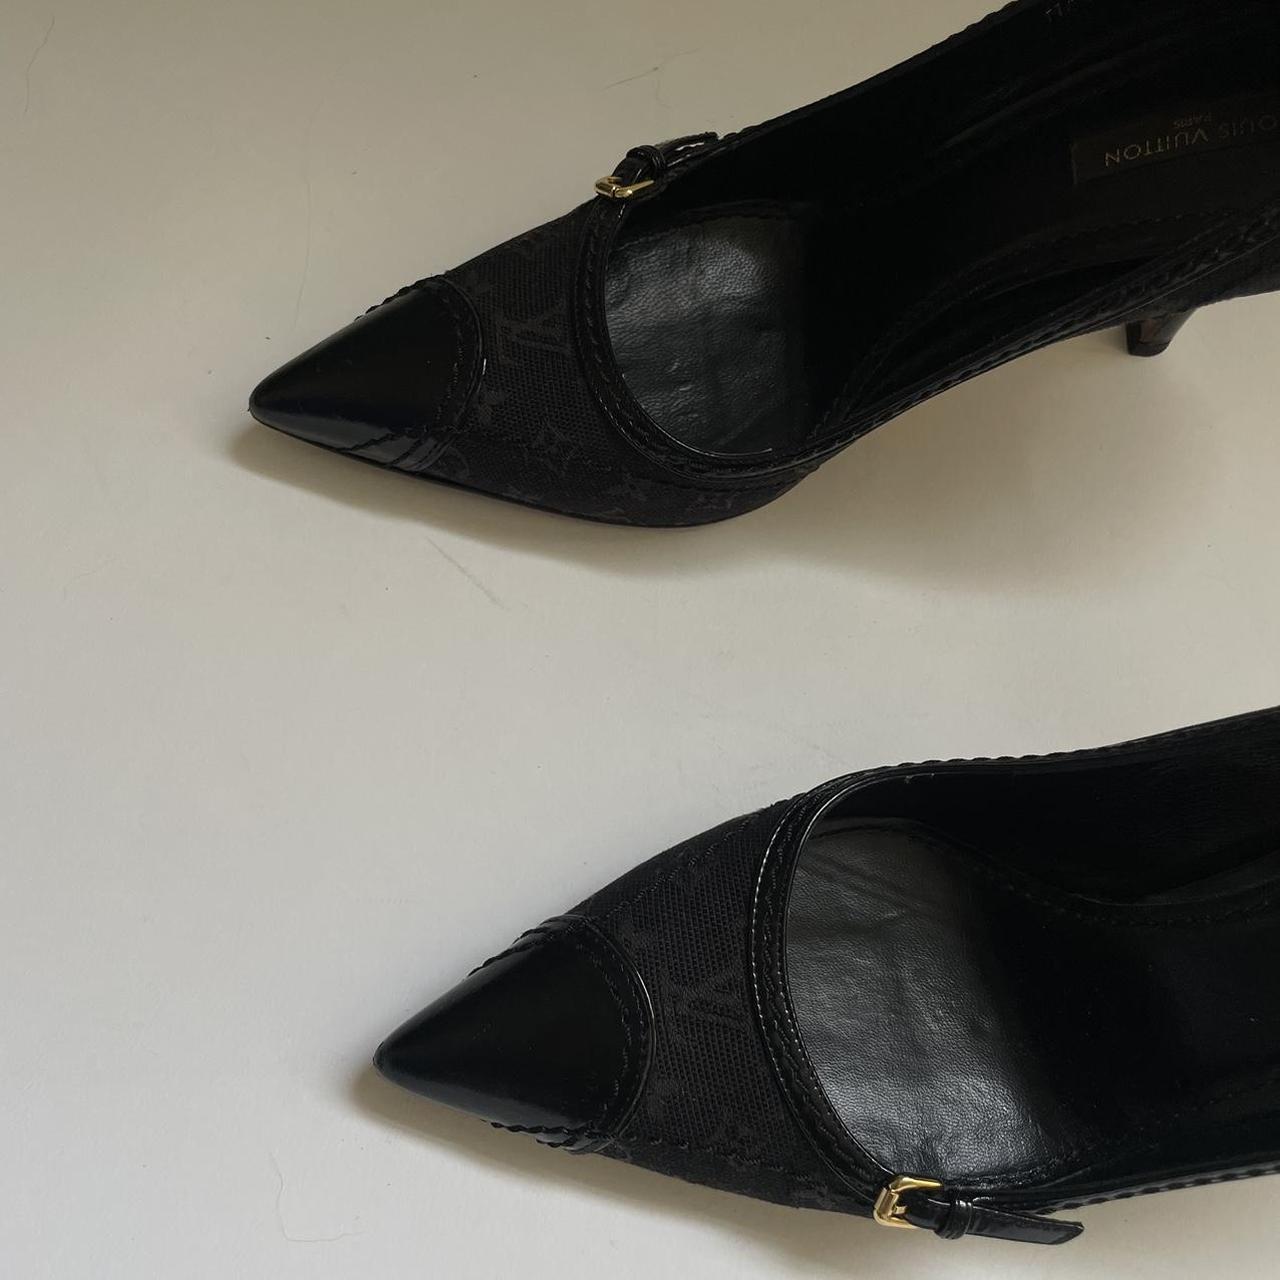 Vintage Louis Vuitton monogram heels / court shoes - Depop